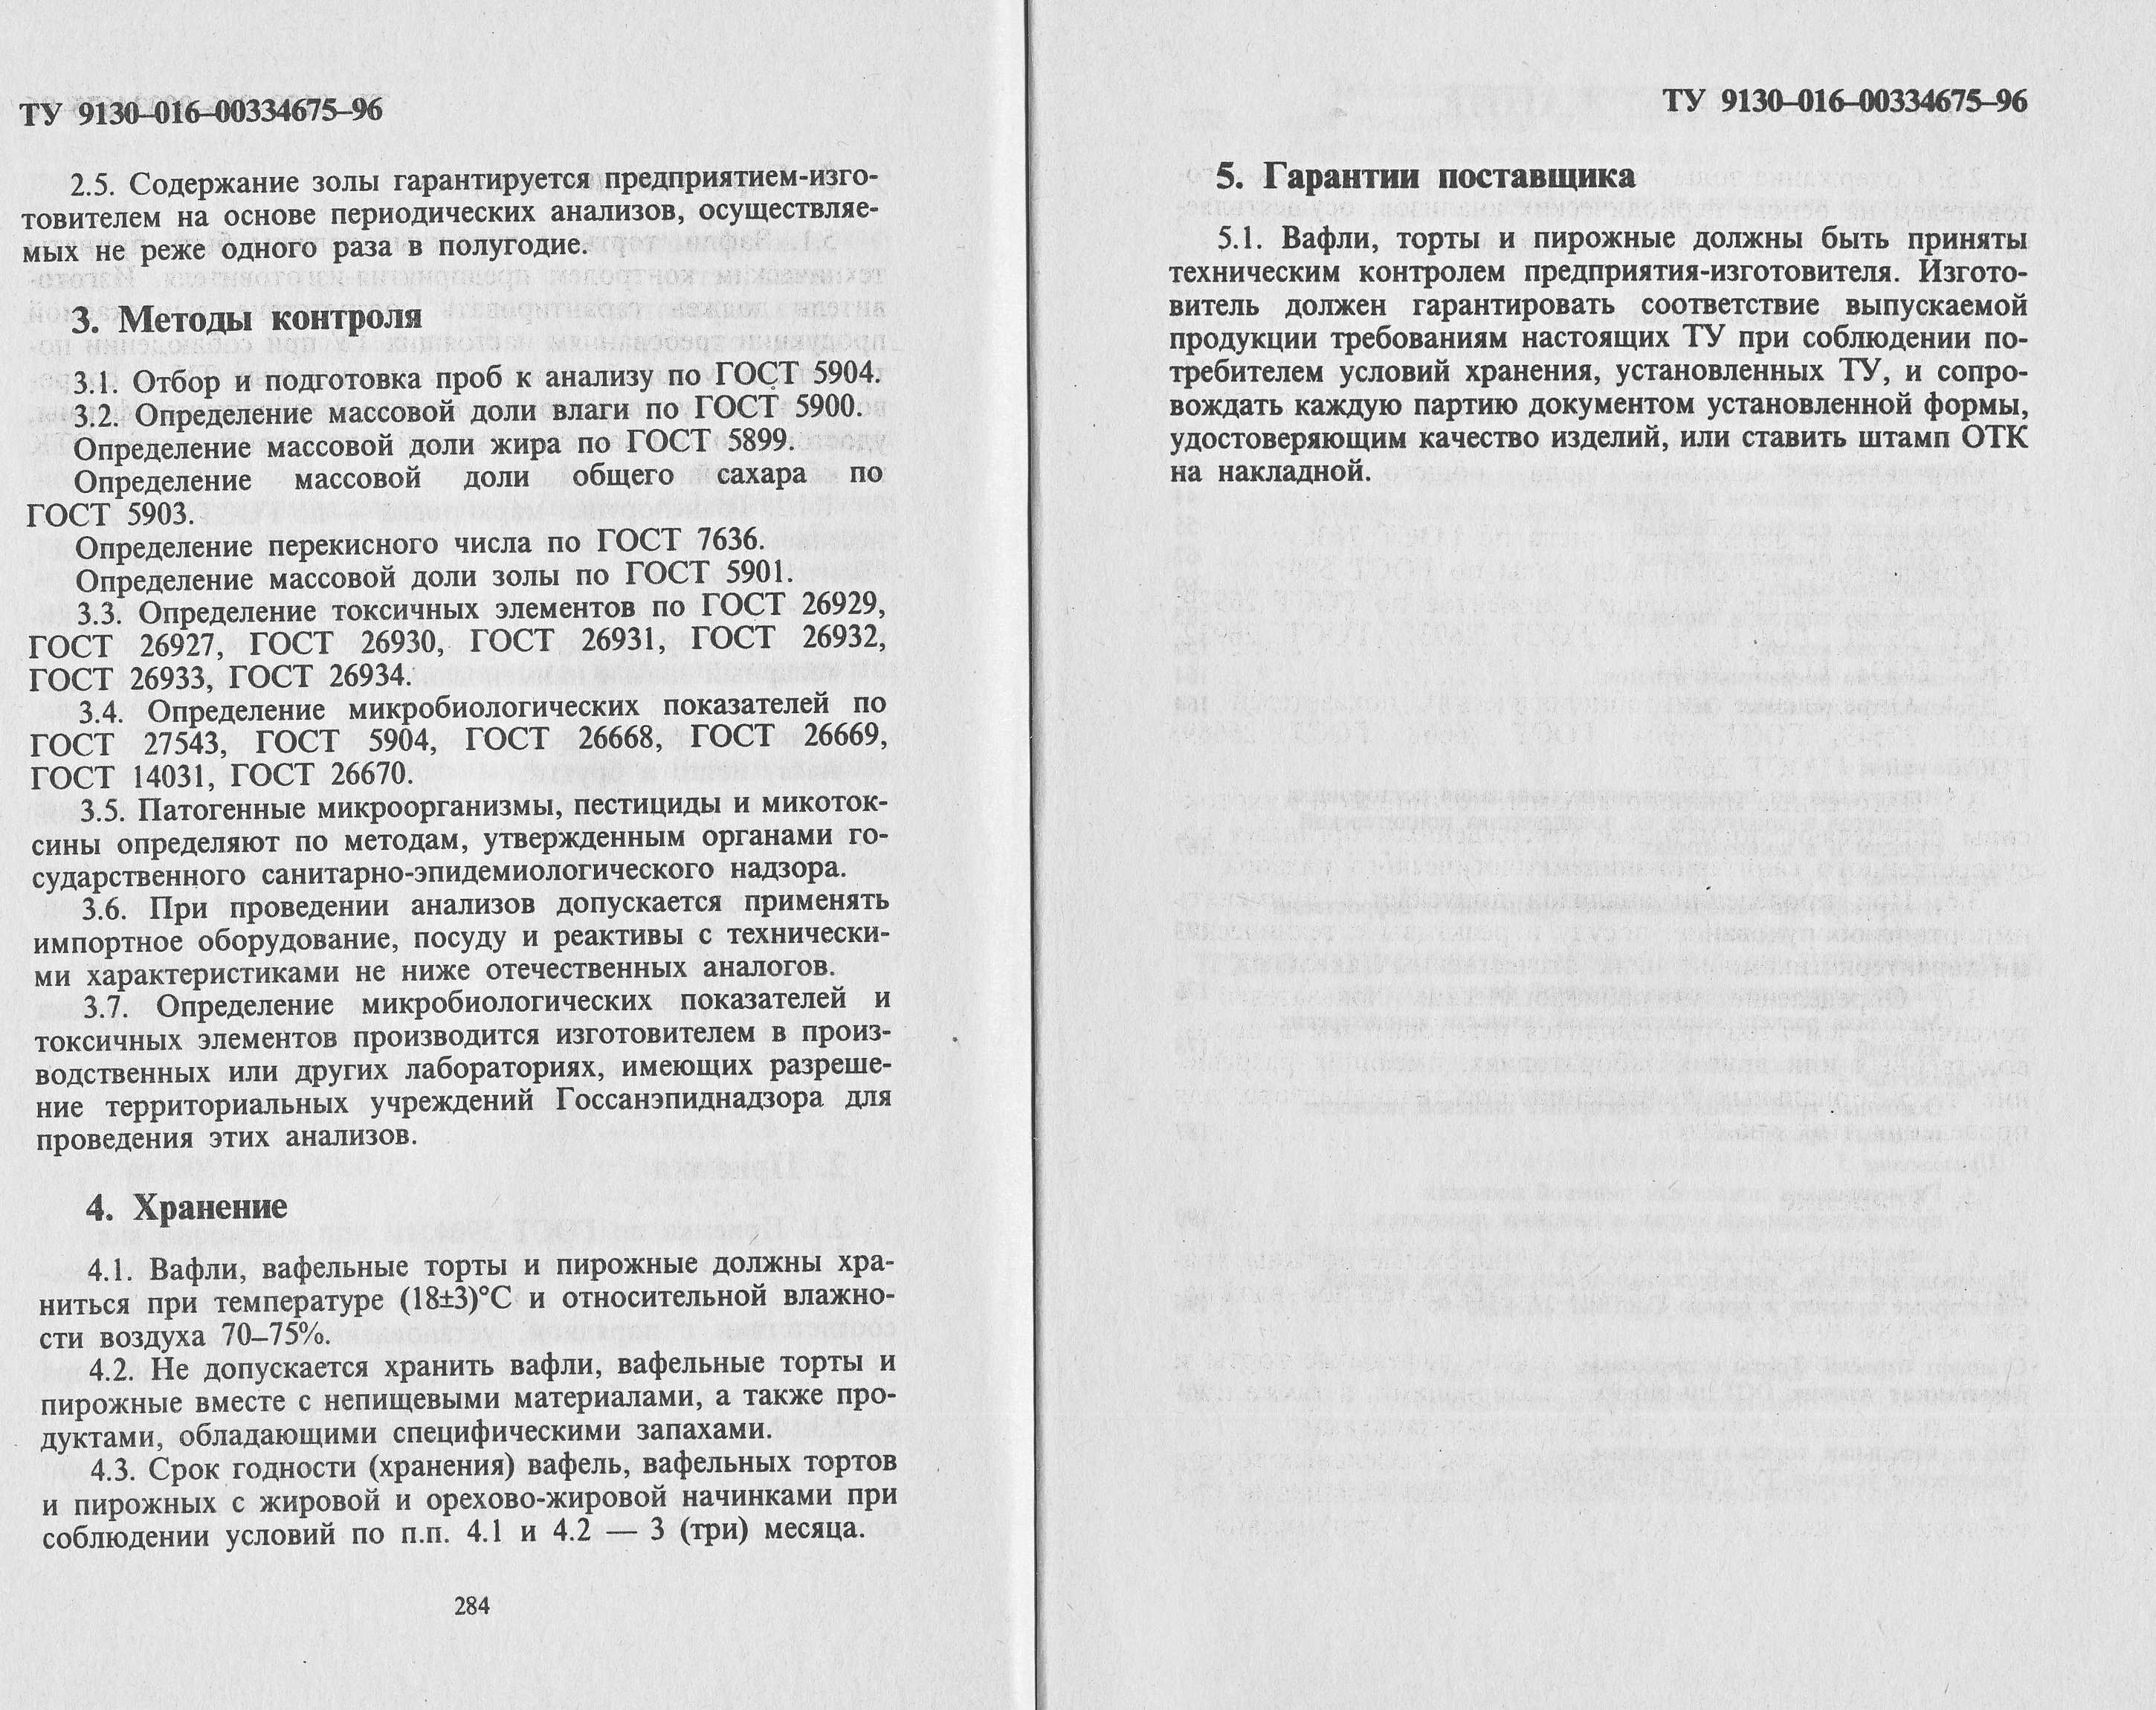 Розробка нормативної документації з виробництва борошняних кондитерських виробів 1992 г. сторінки 284‒285